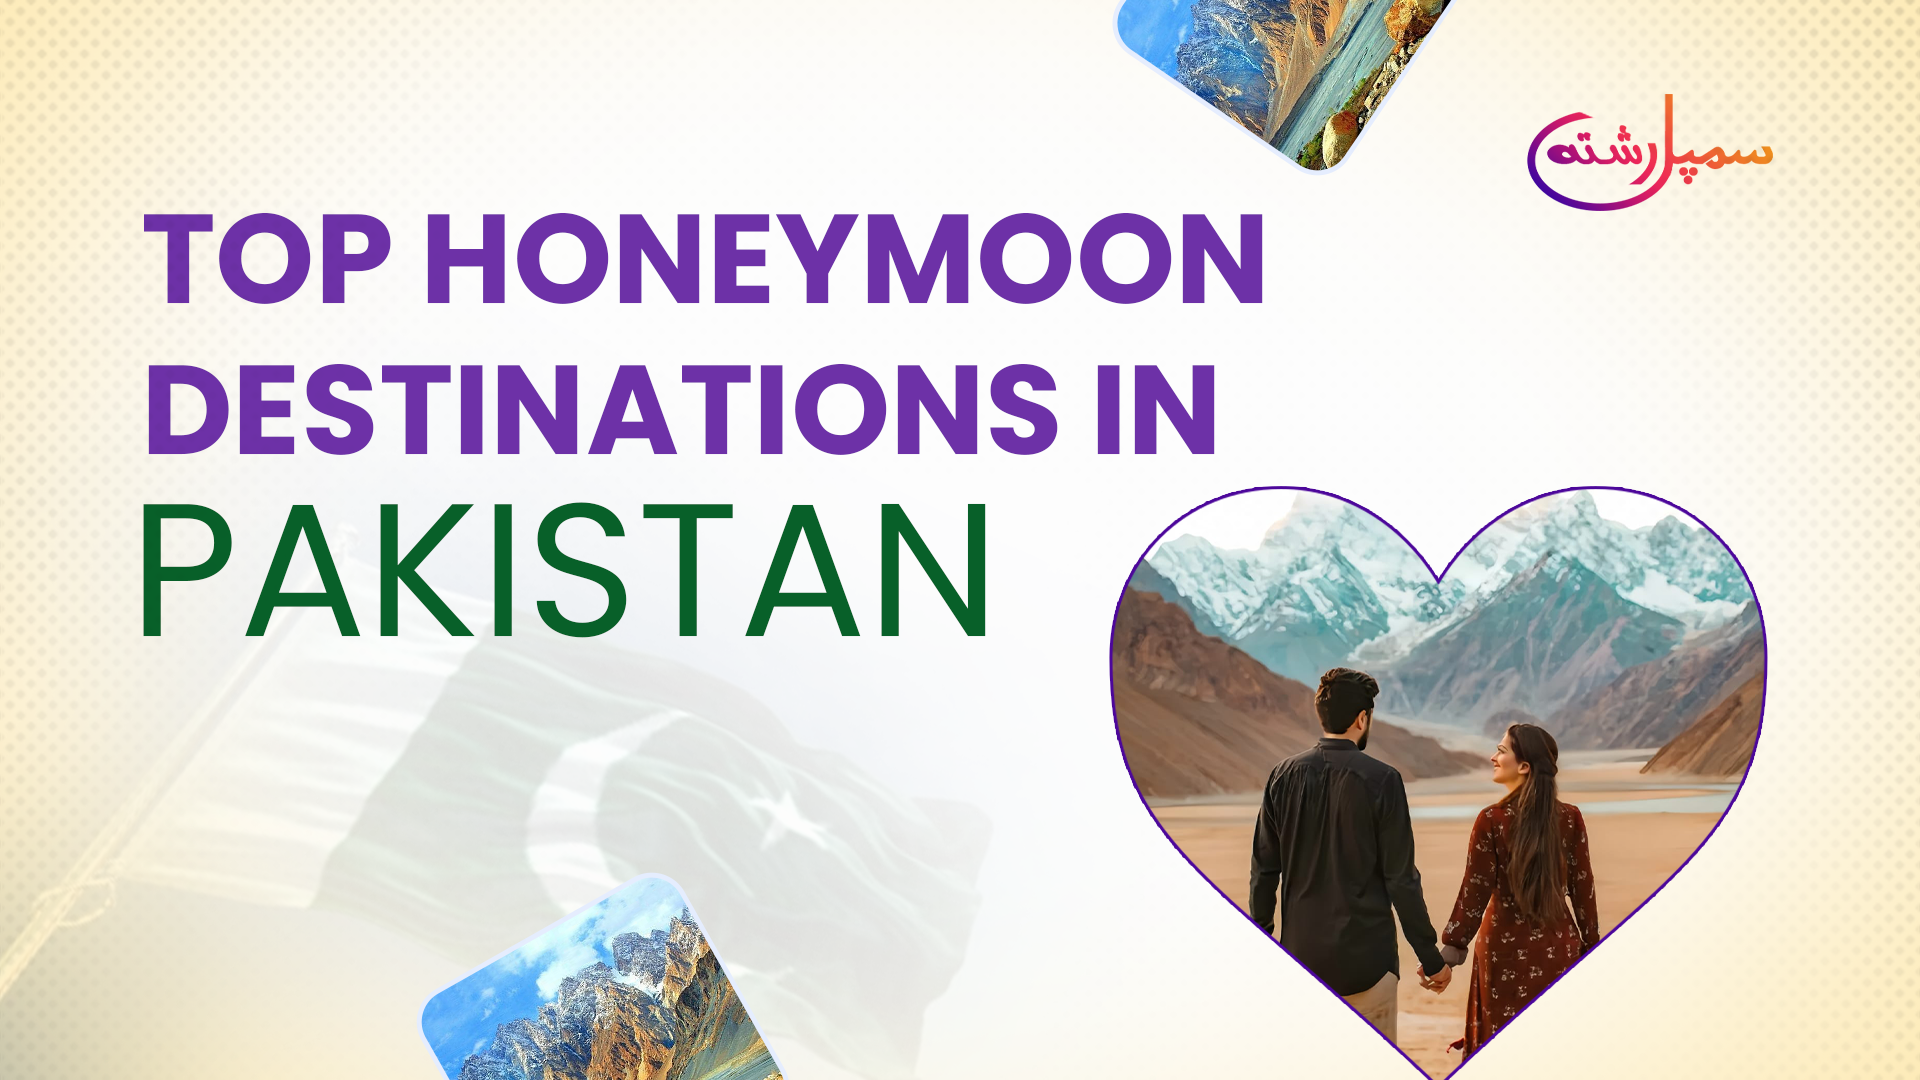 Honeymoon Destinations in Pakistan